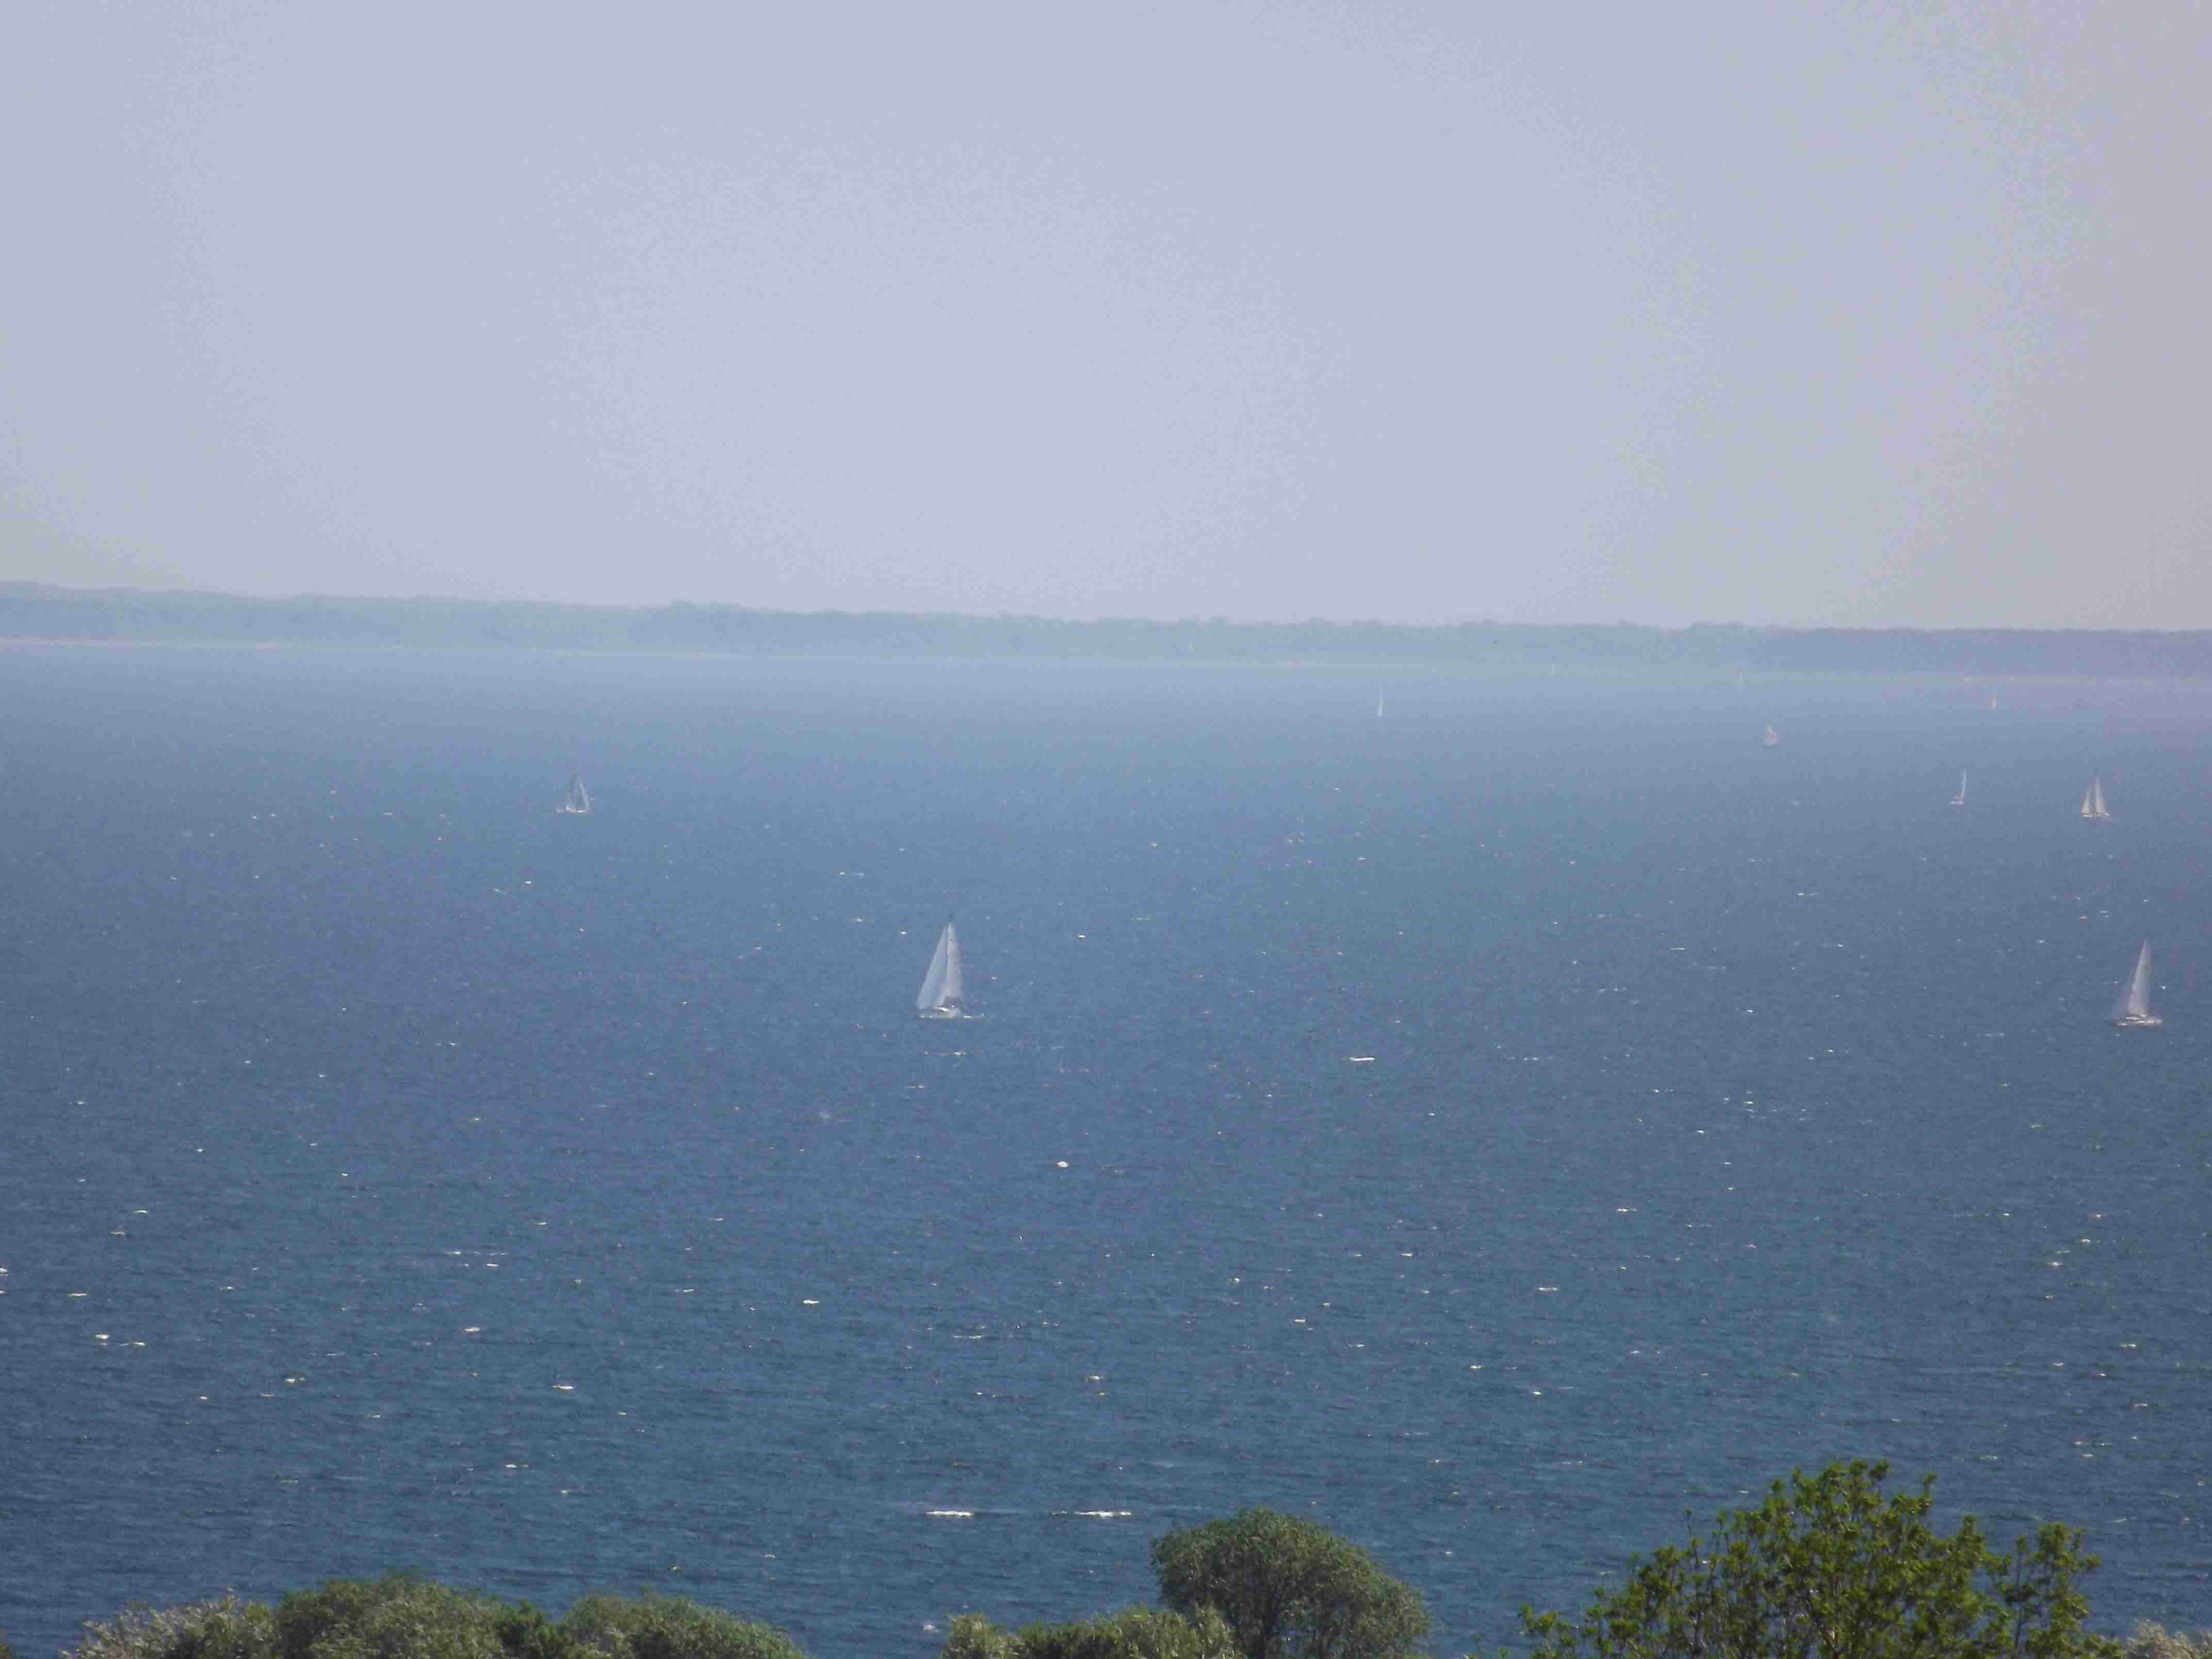 Foto: Die blaue Ostsee glitzert im Sonnenschein. Darin kleine Boote mit weißen Segeln. Quelle: S.Hahn